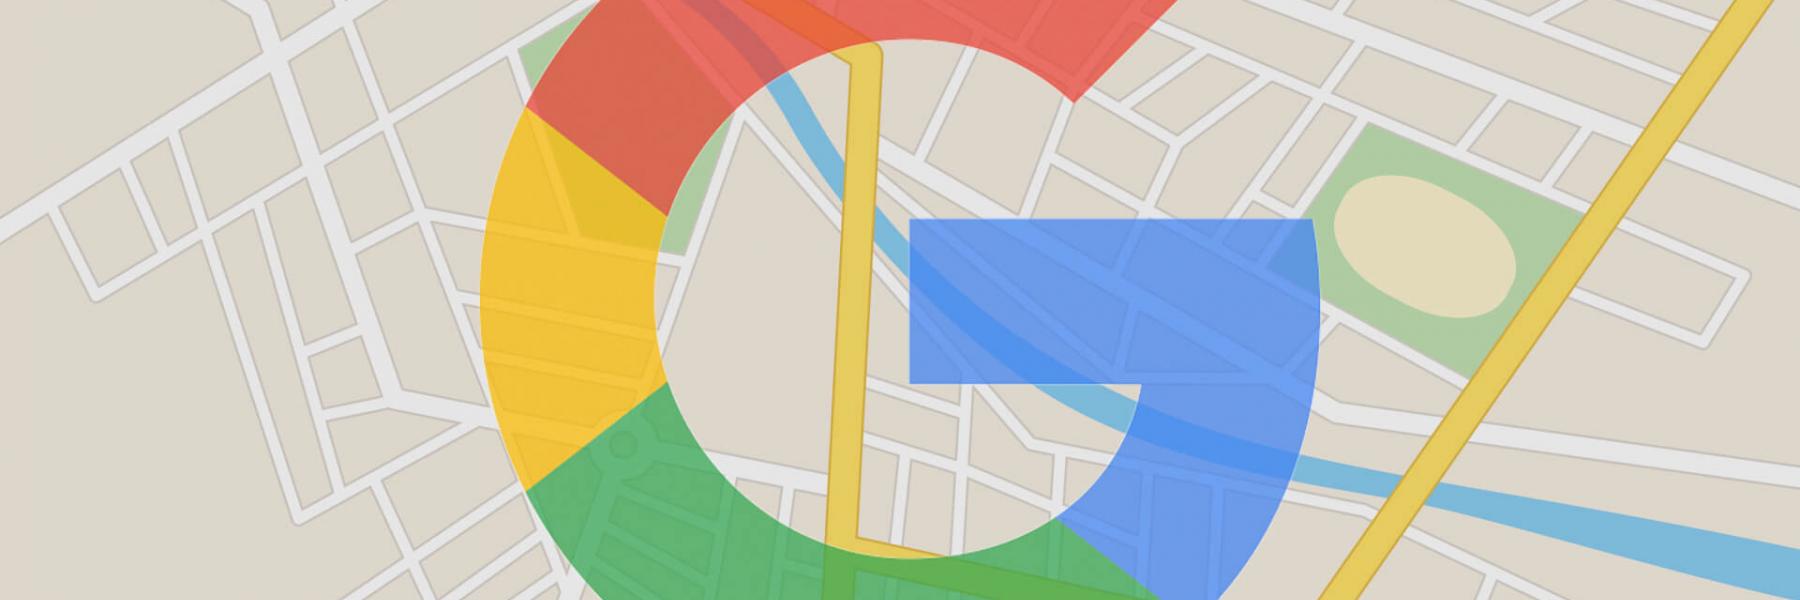 غوغل تضيف لخرائطها ميزة جديدة لمحبي السفر، تعرفوا إليها